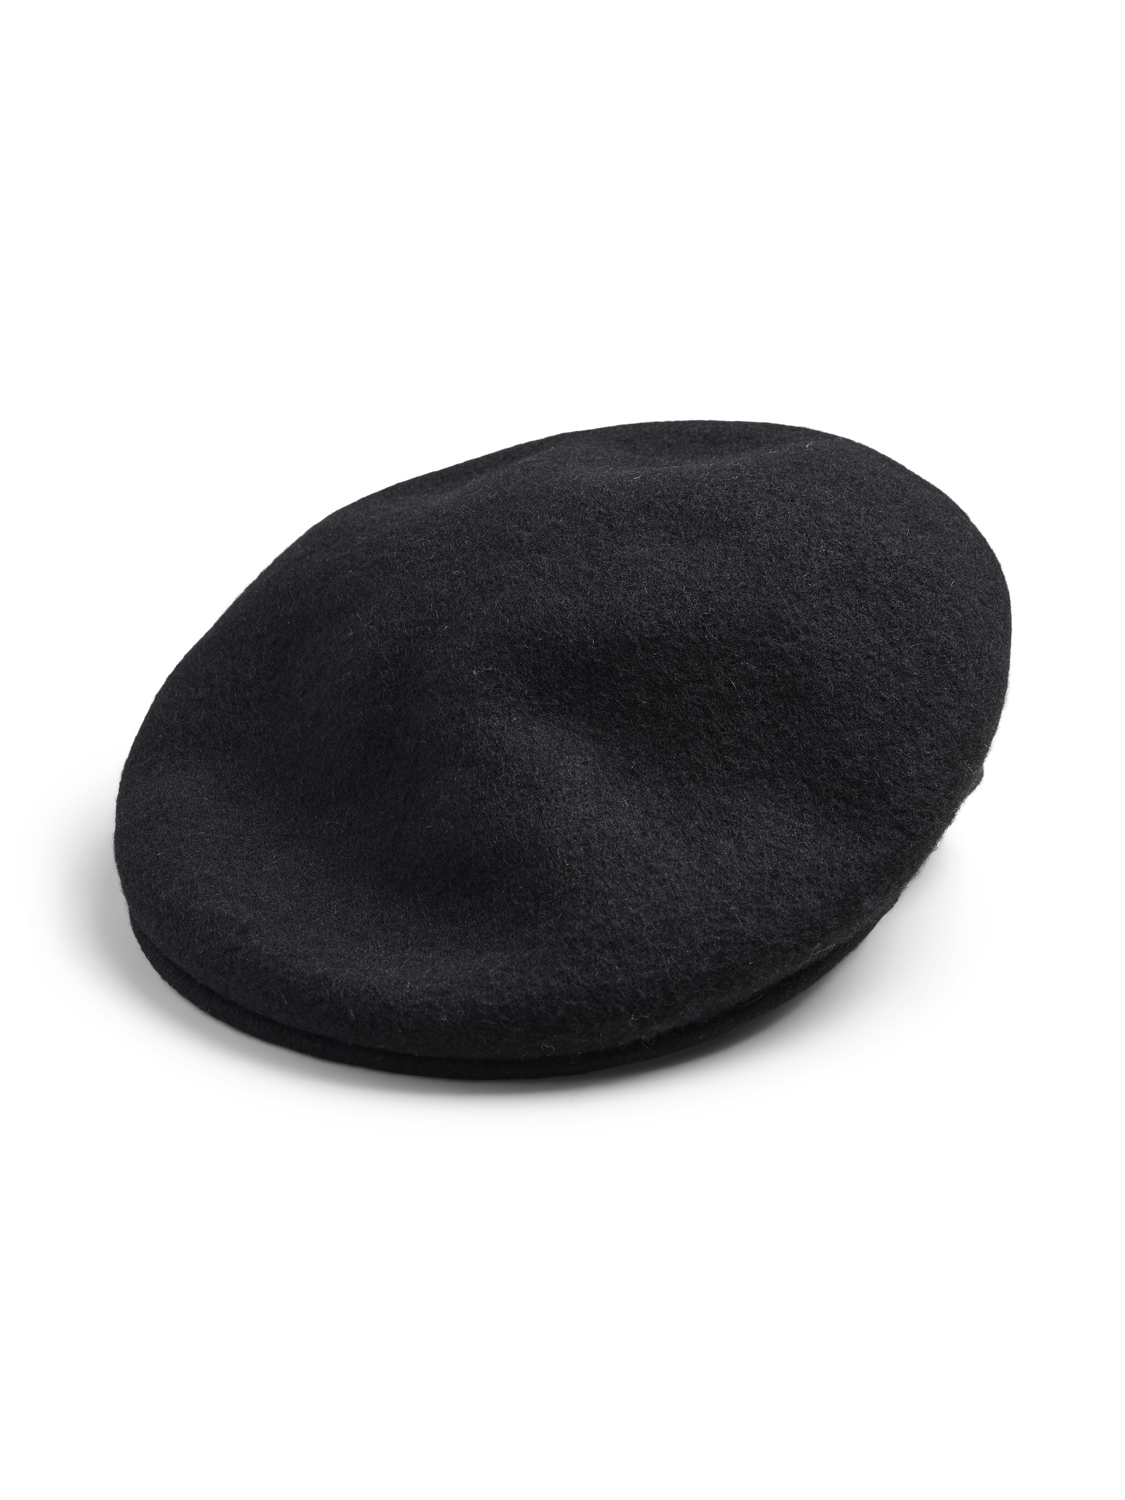 PCGUNNI Cap - Black